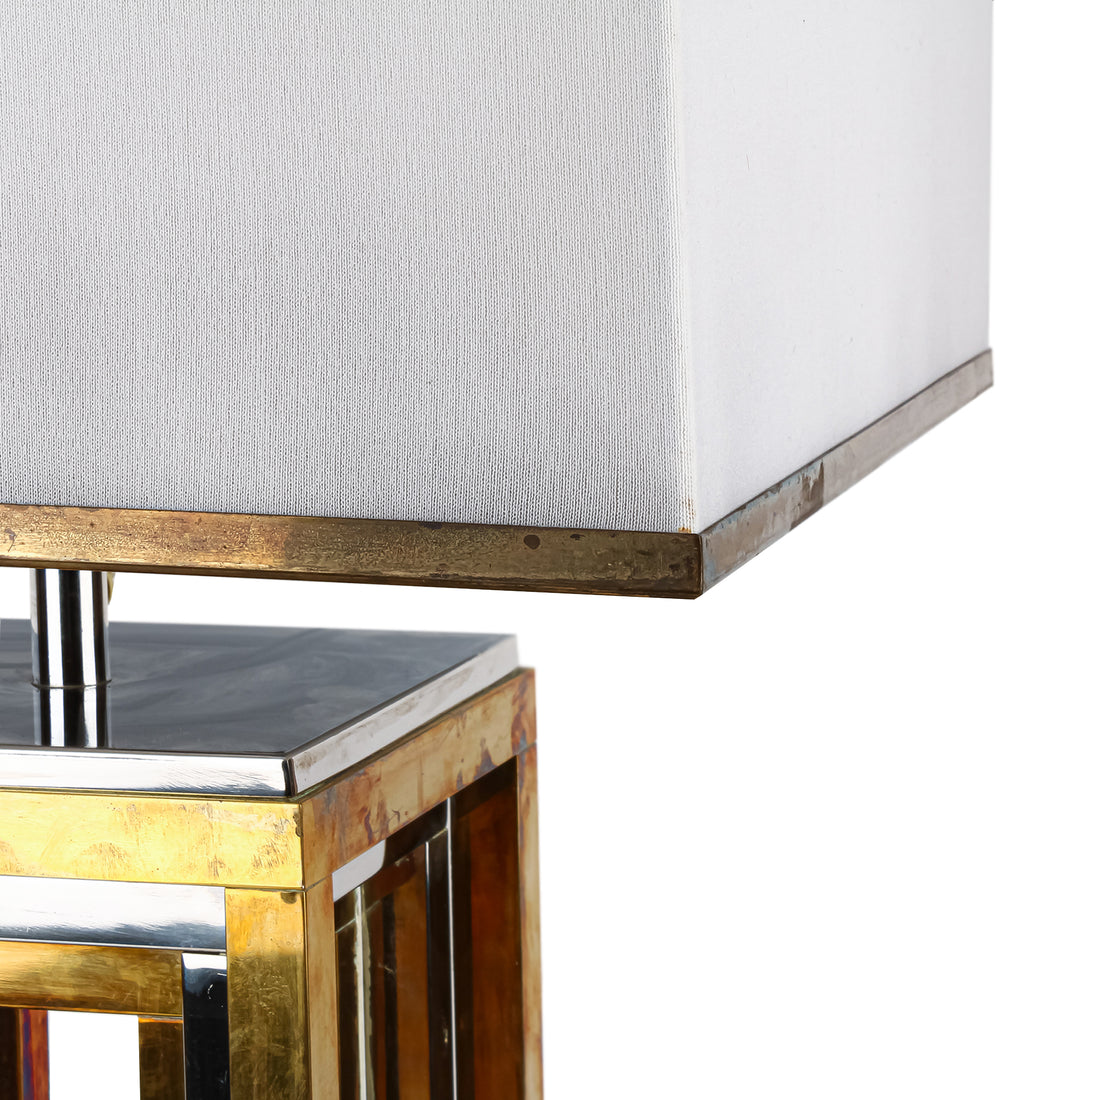 ROMEO REGA Brass & Chrome Square Table Lamp